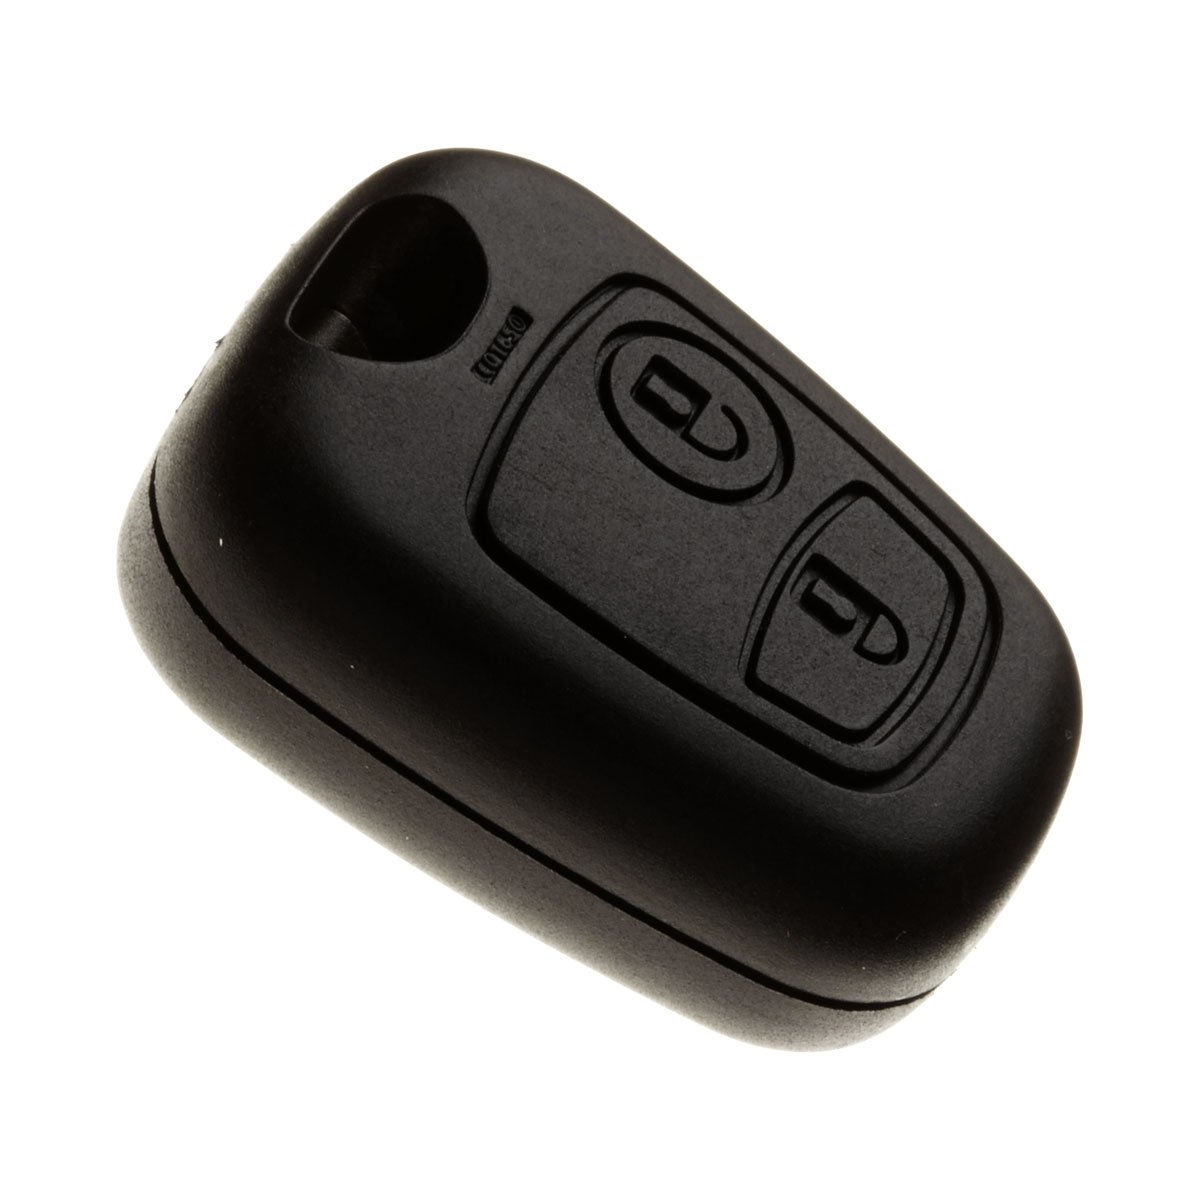 JONGO - Autoschlüssel-Gehäuse ohne Schlüsselblatt kompatibel mit Citroën Saxo, Xsara Picasso et Berlingo | Plip Fernbedienung Funkschlüssel Nutzfahrzeug 2-Tasten Transponderschlüssel von JONGO